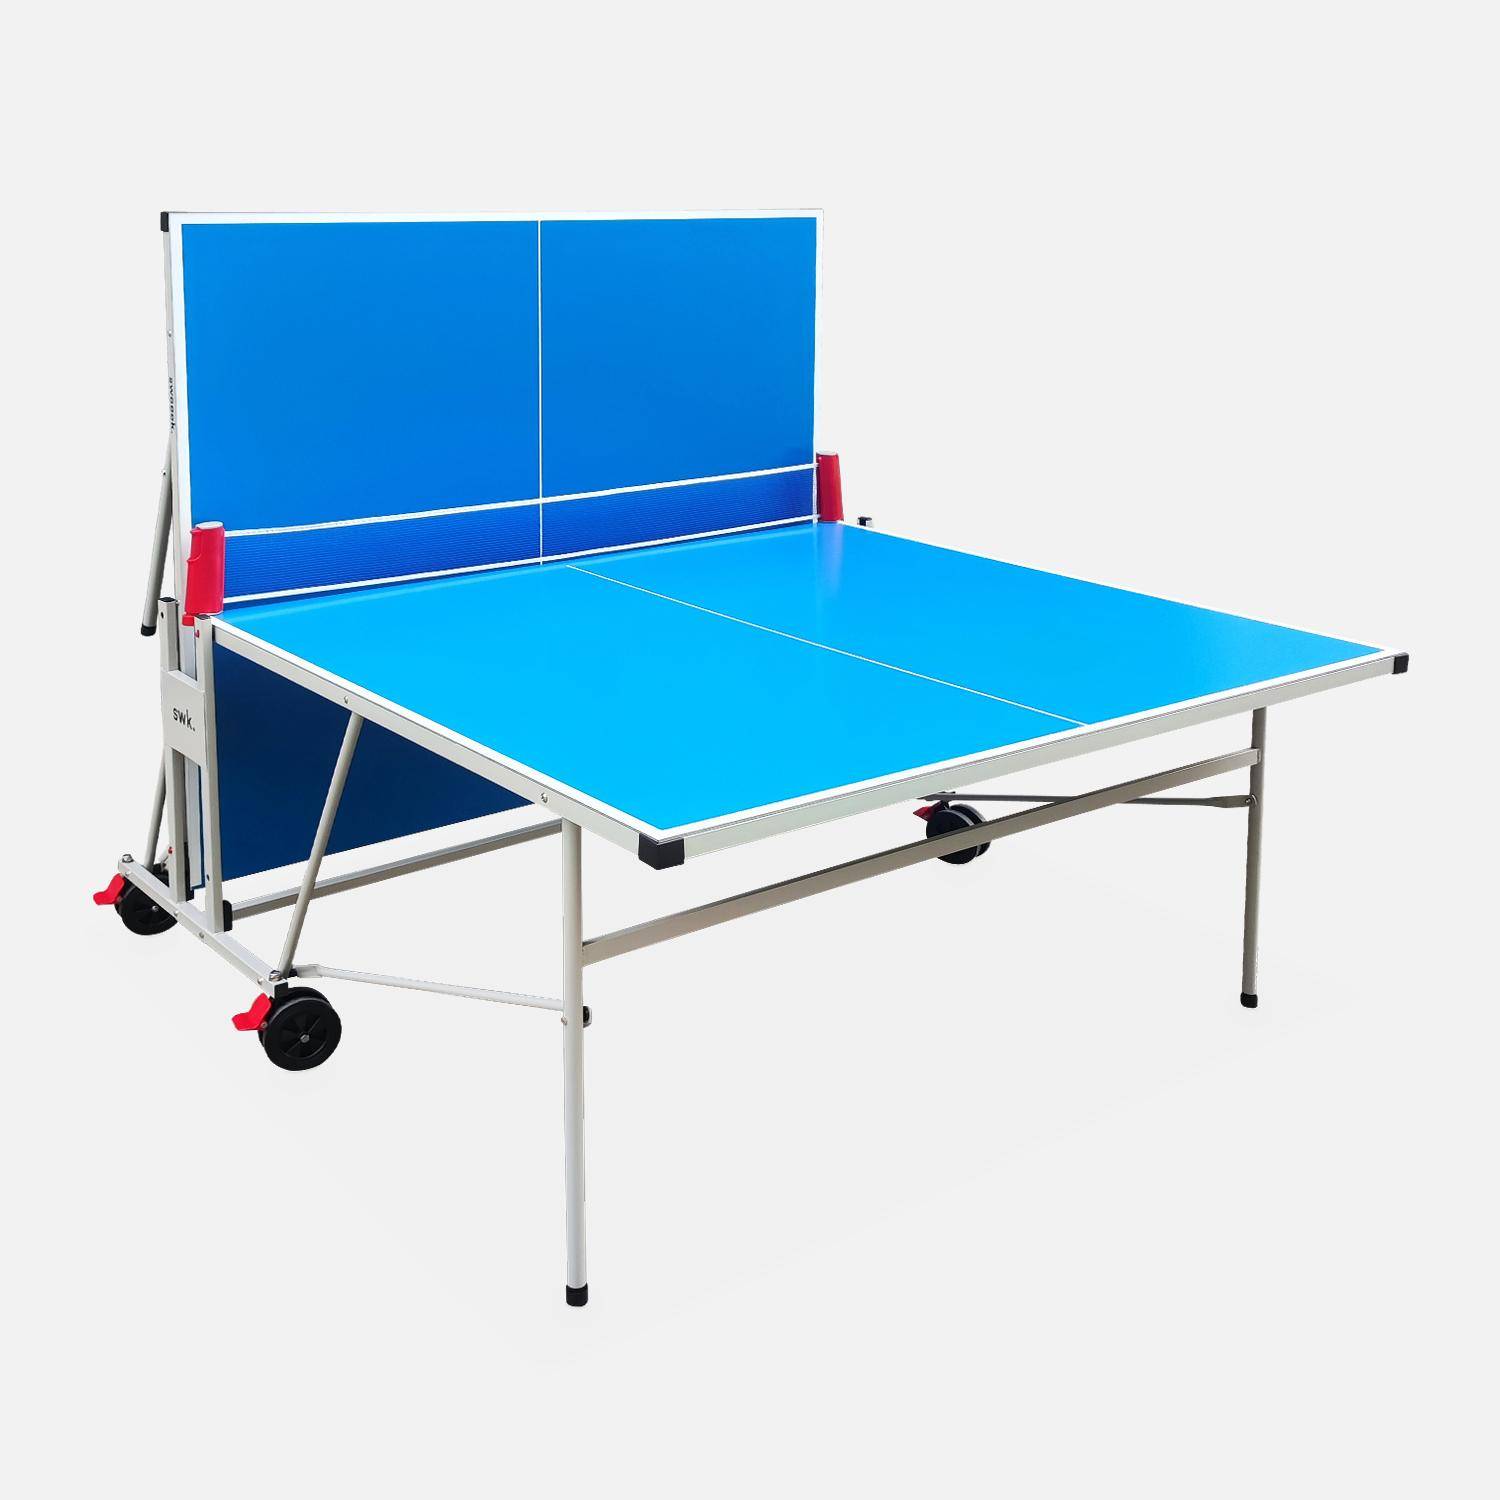 Table de ping pong OUTDOOR bleue, avec 2 raquettes et 3 balles, pour utilisation extérieure, sport tennis de table Photo2